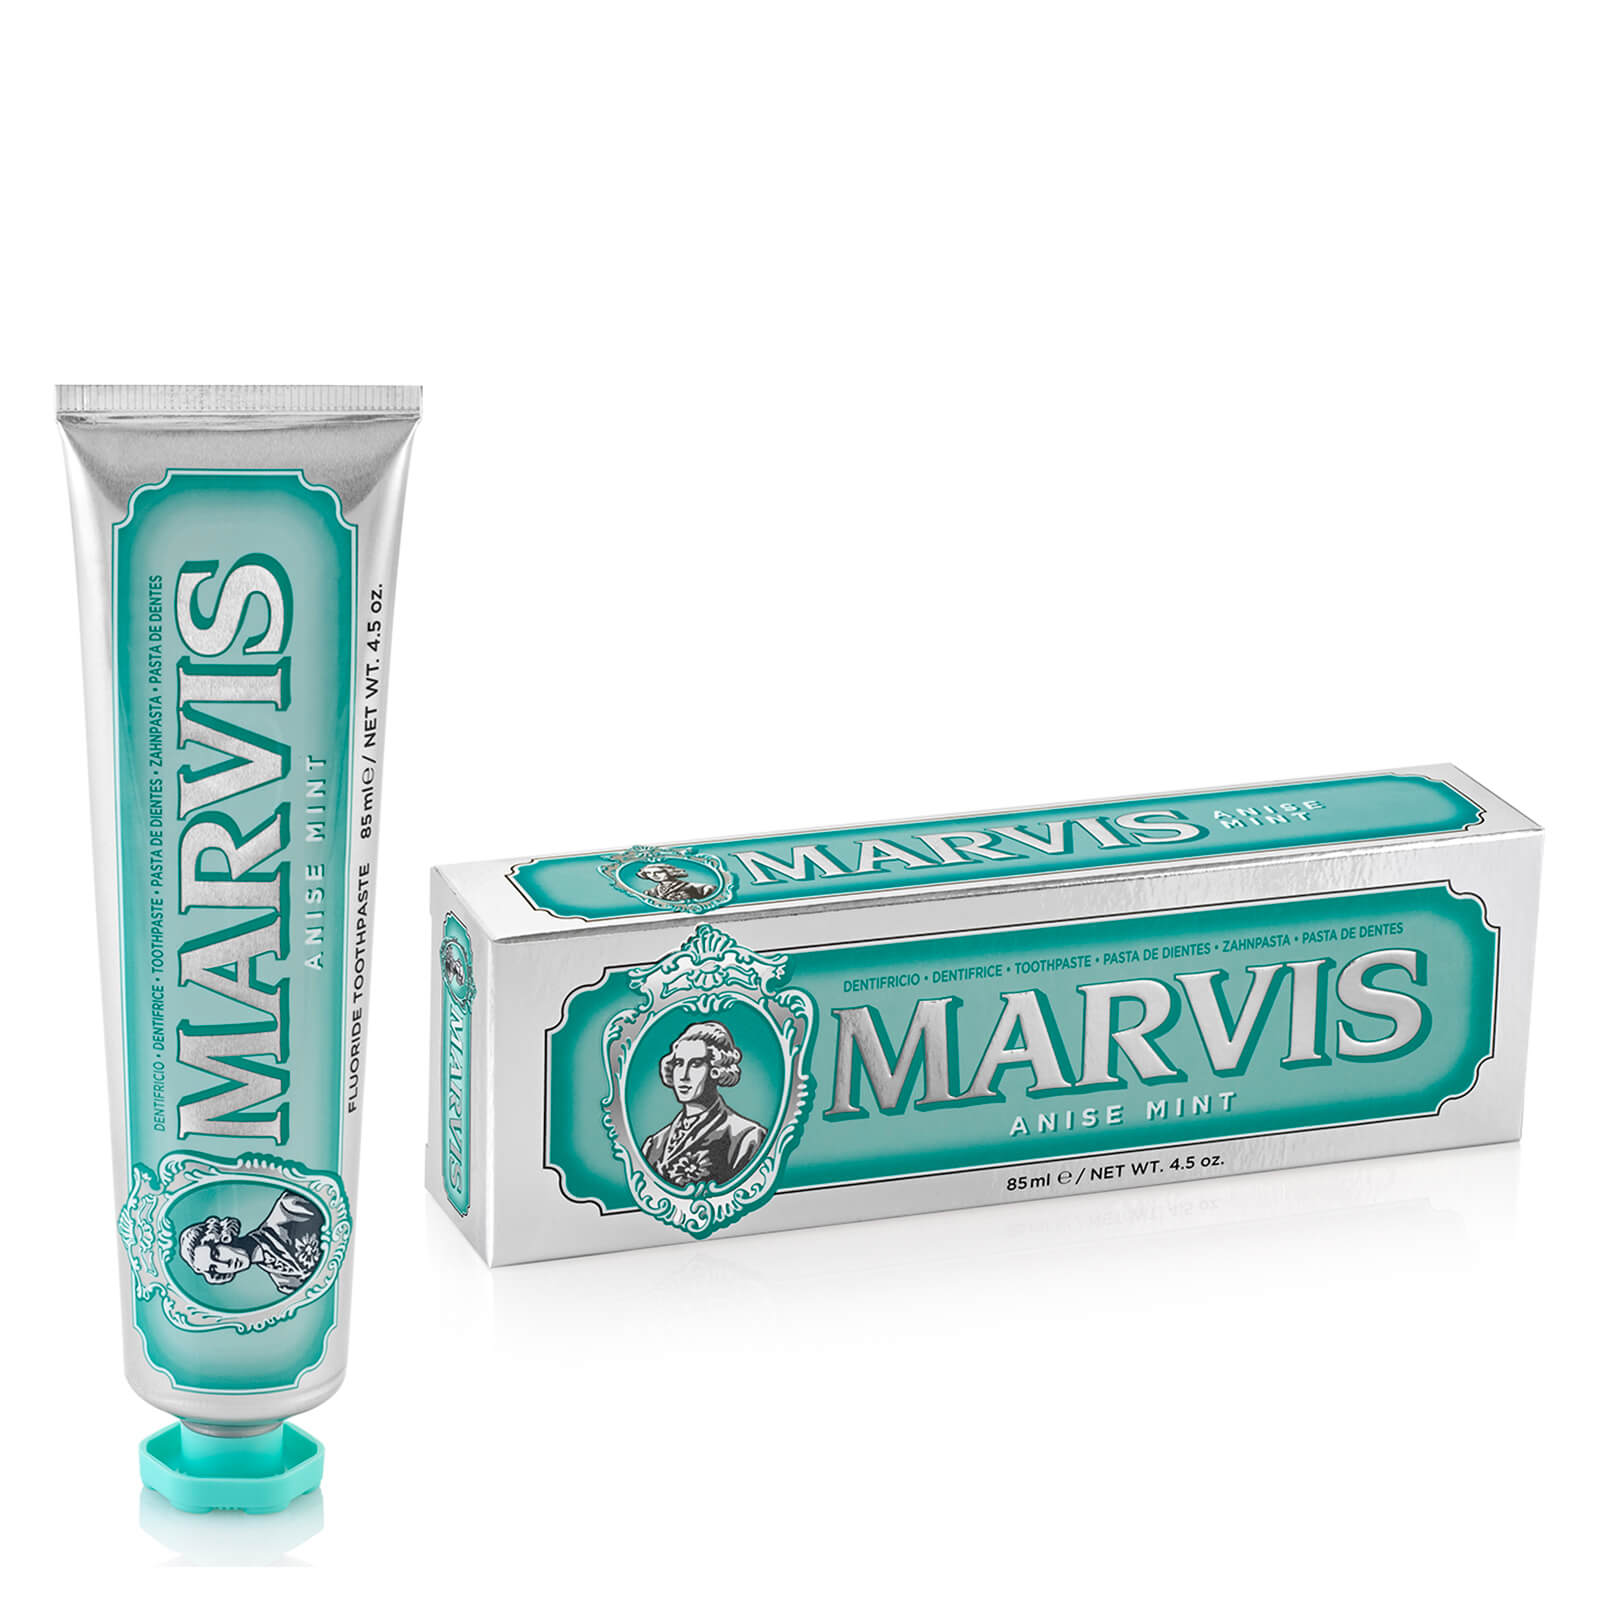 Marvis Aniseed Mint Toothpaste 85ml lookfantastic.com imagine